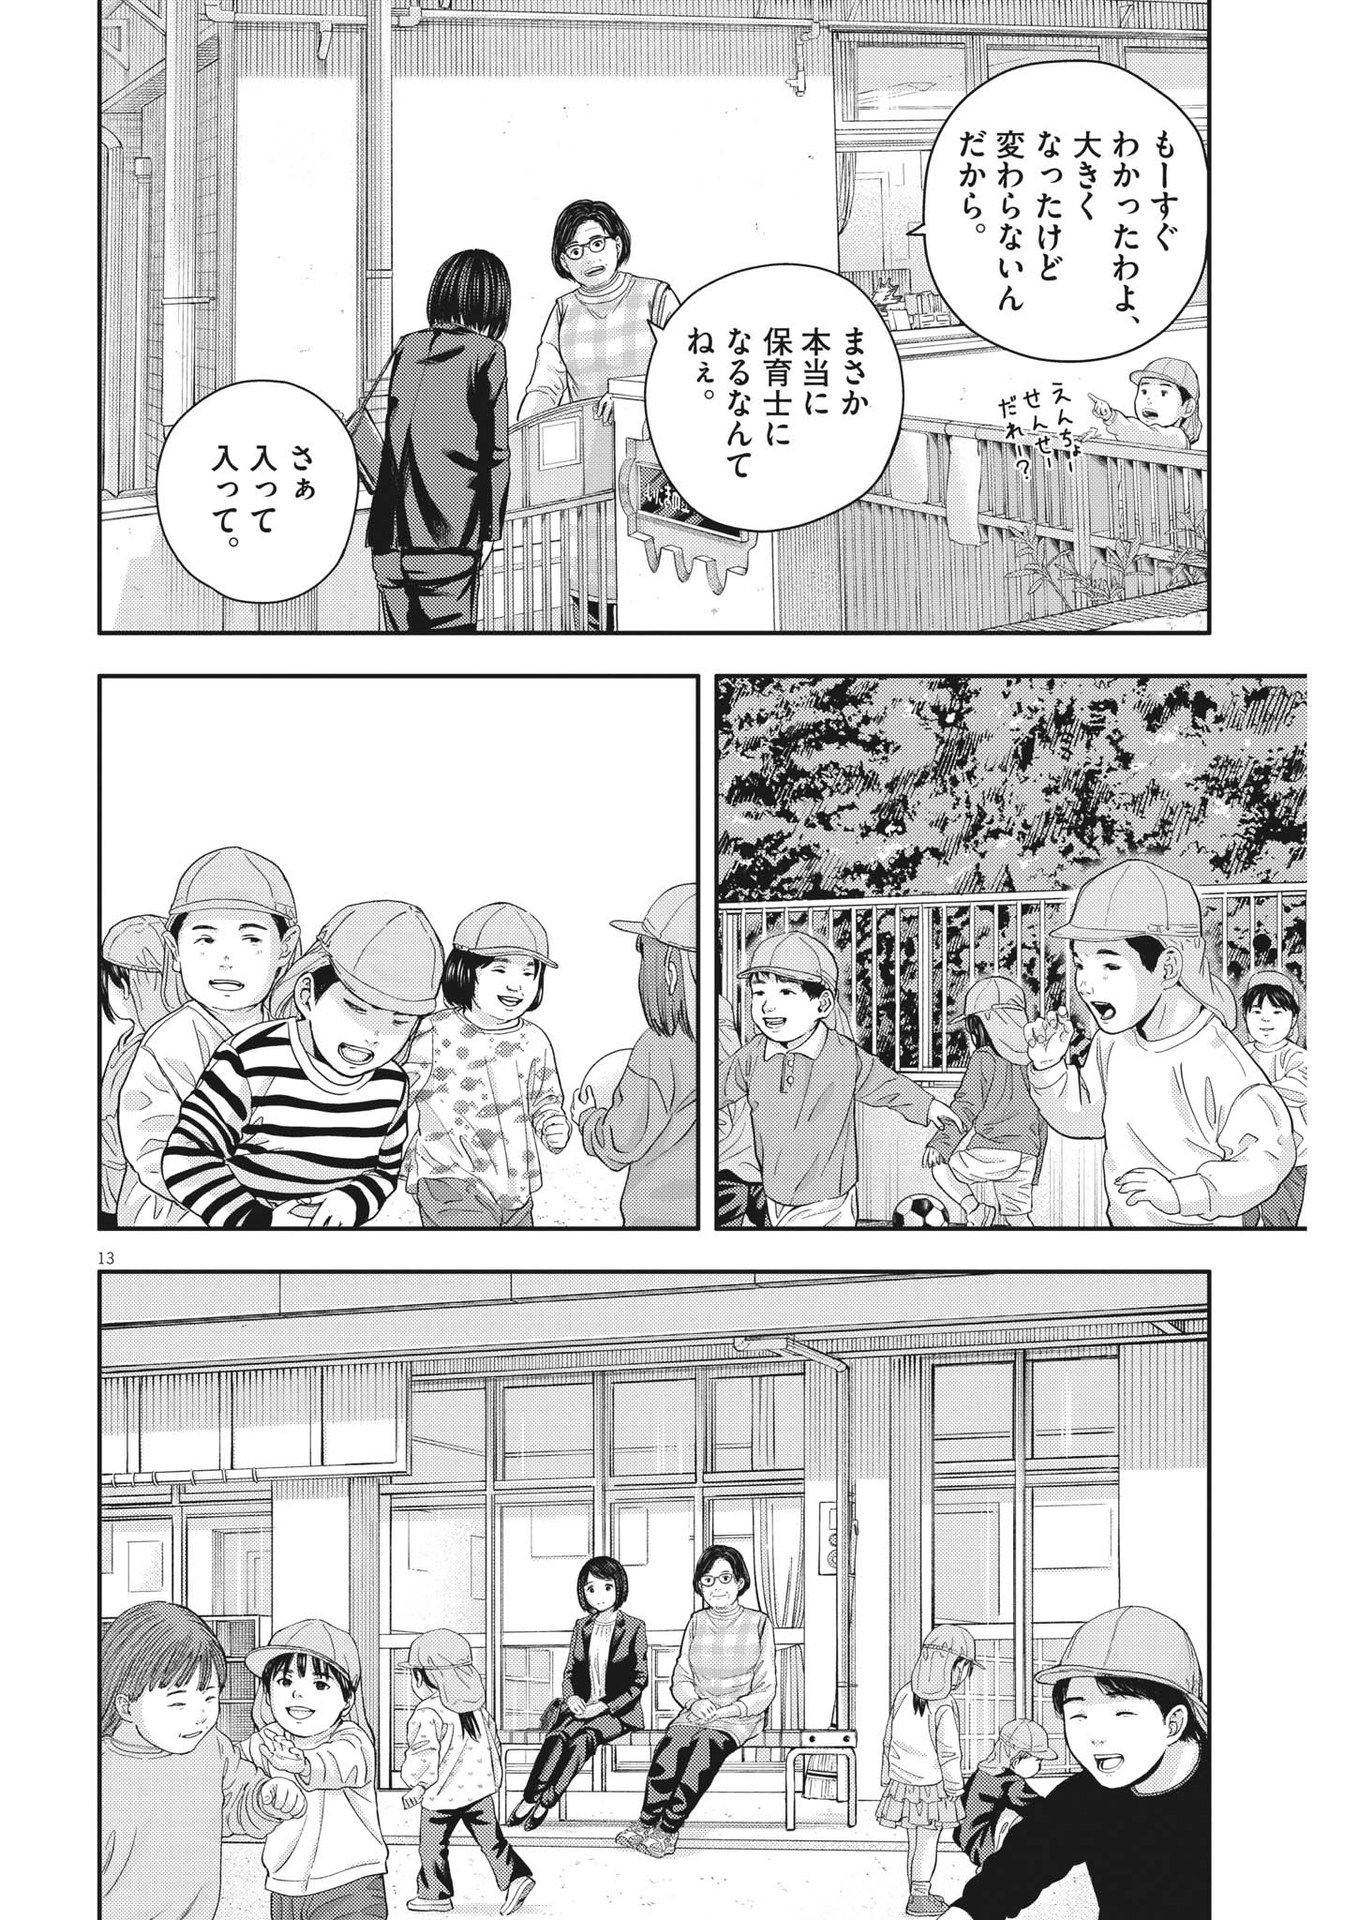 Yumenashi-sensei no Shinroshidou - Chapter 24 - Page 13